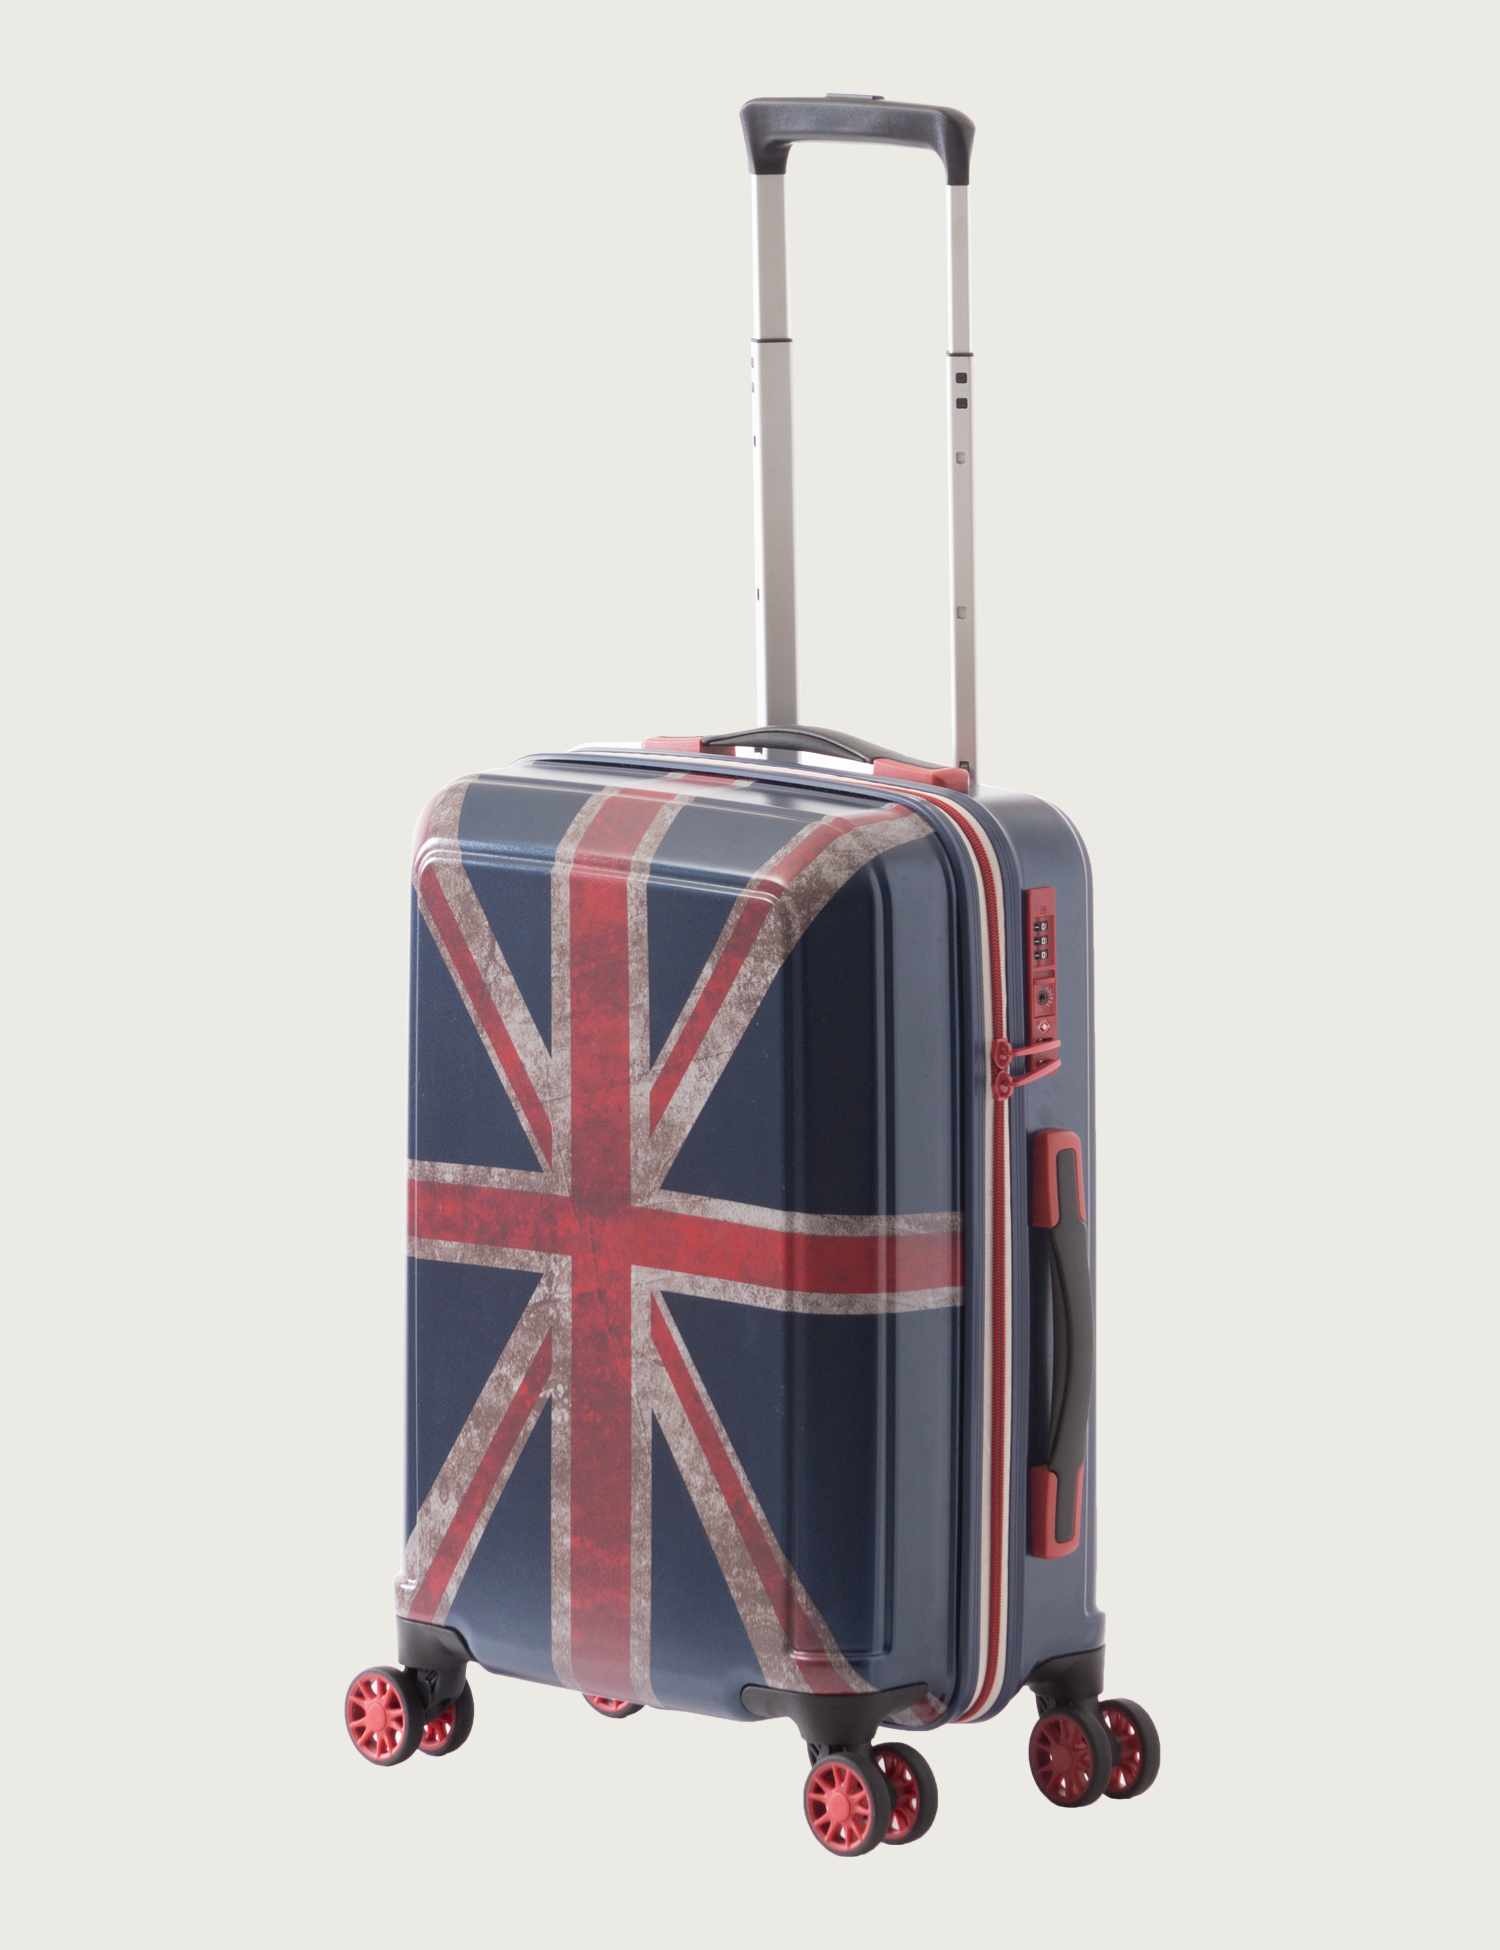 アジア・ラゲージのスーツケース ユニオンジャック | アジア・ラゲージ 